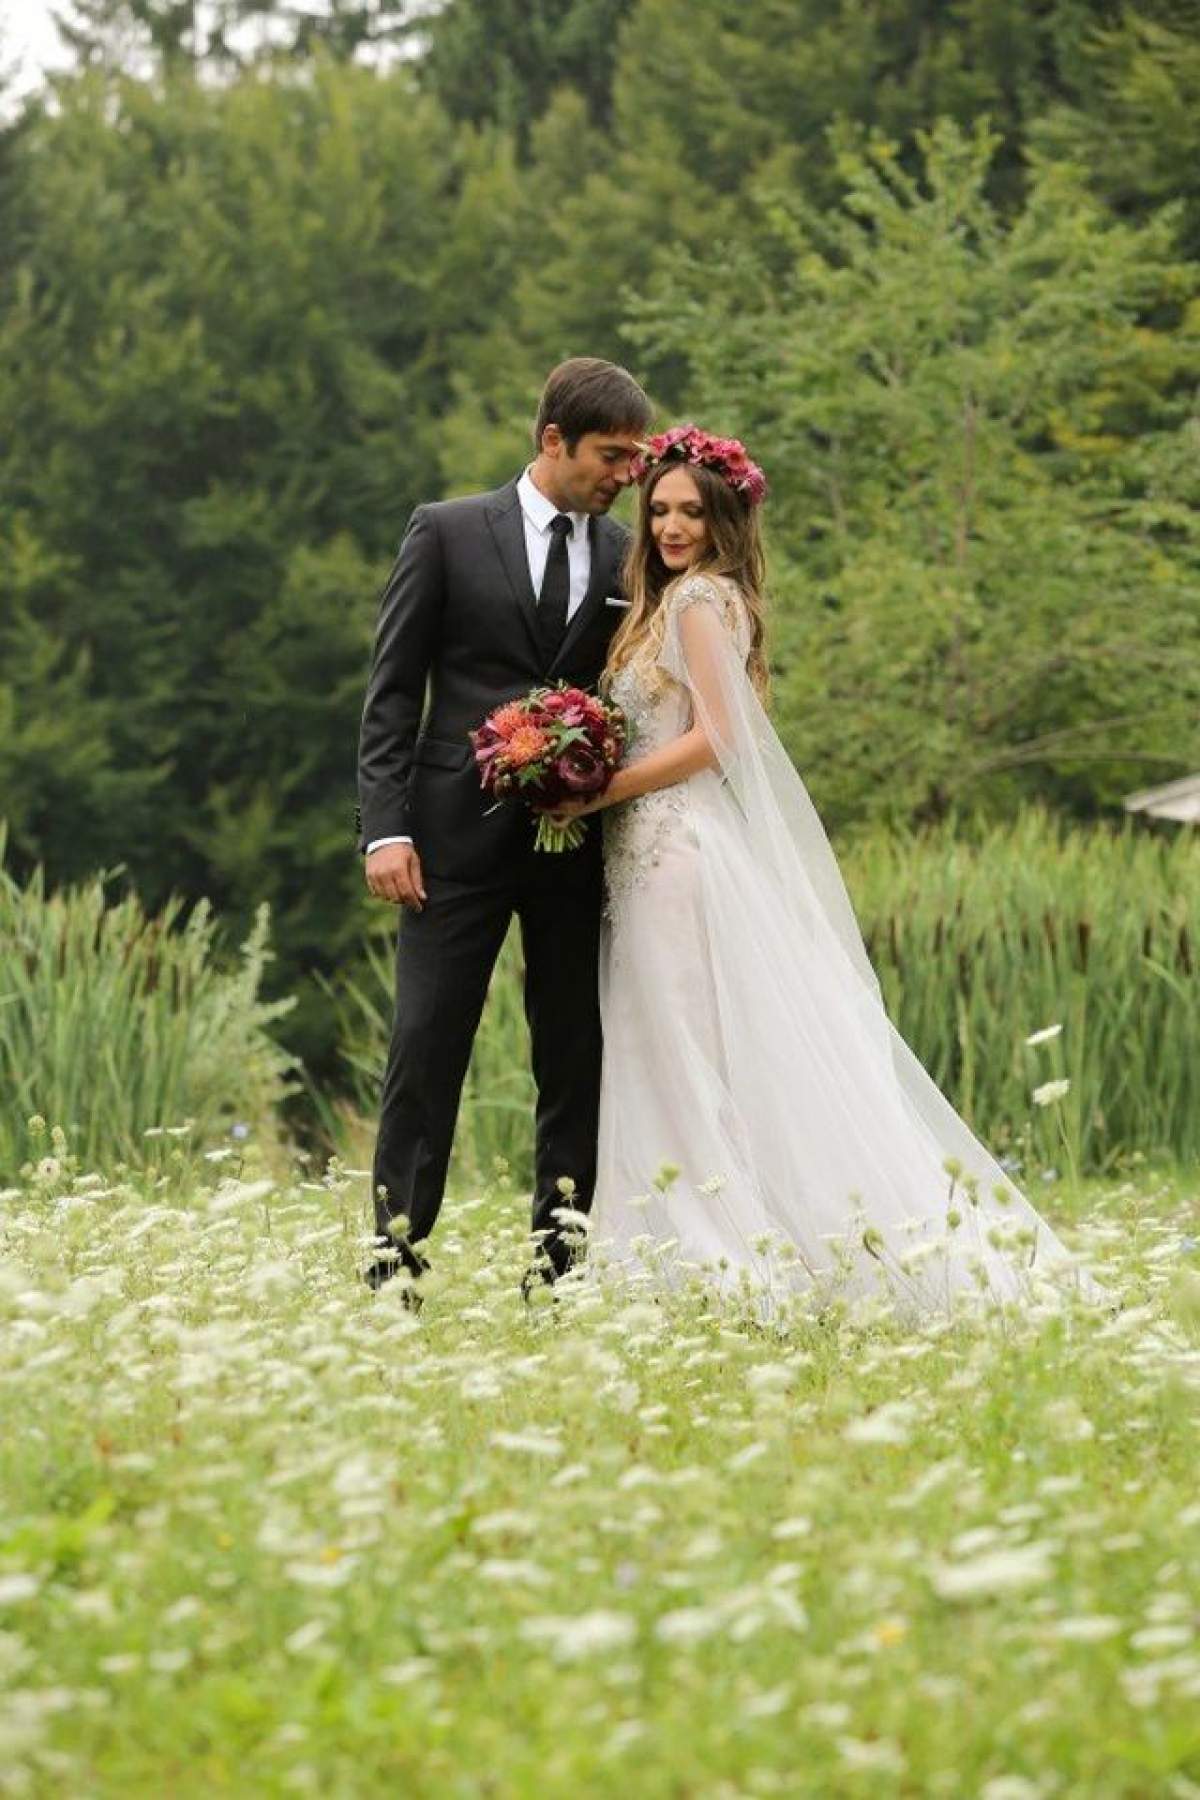 Adela Popescu şi Radu Vâlcan s-au căsătorit! Primele imagini de la nuntă